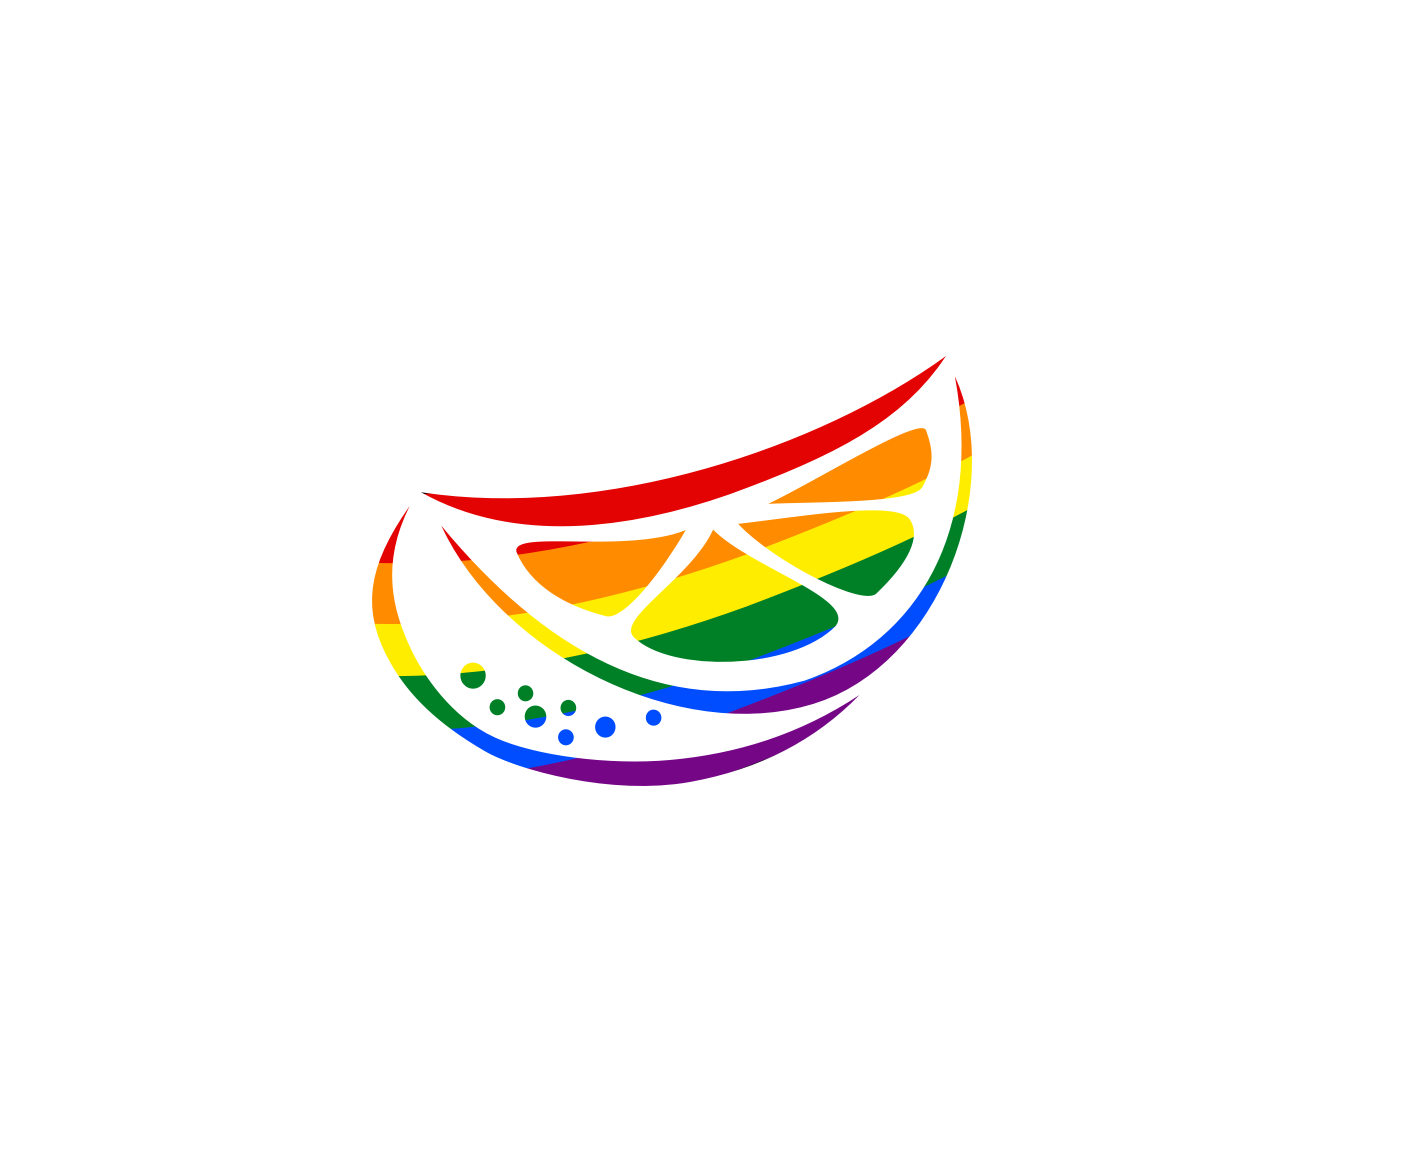 silverorange slice logo with rainbow colors